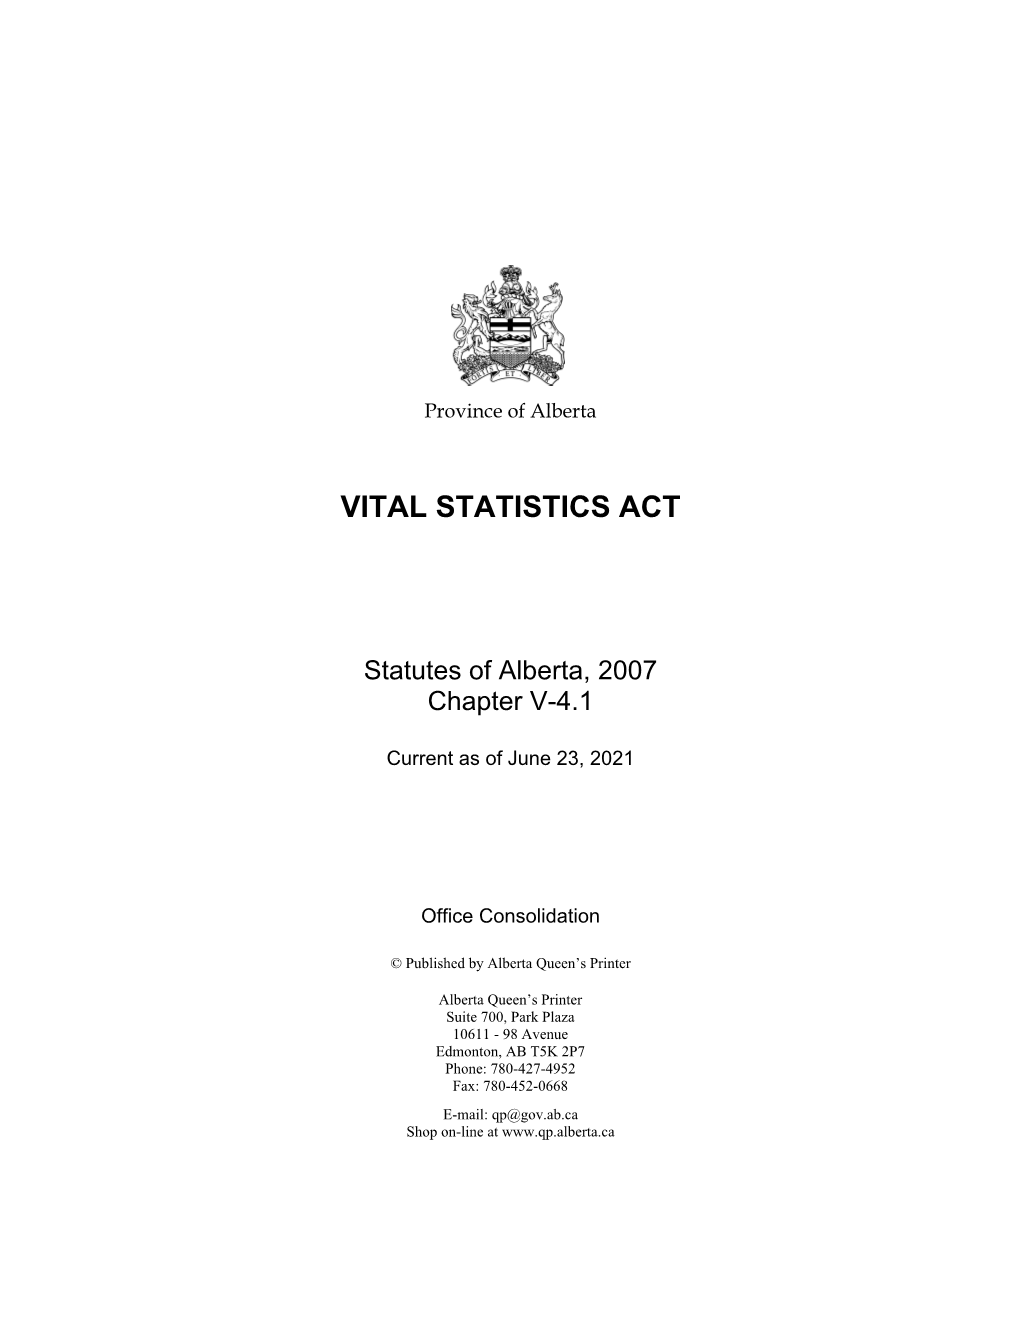 Vital Statistics Act